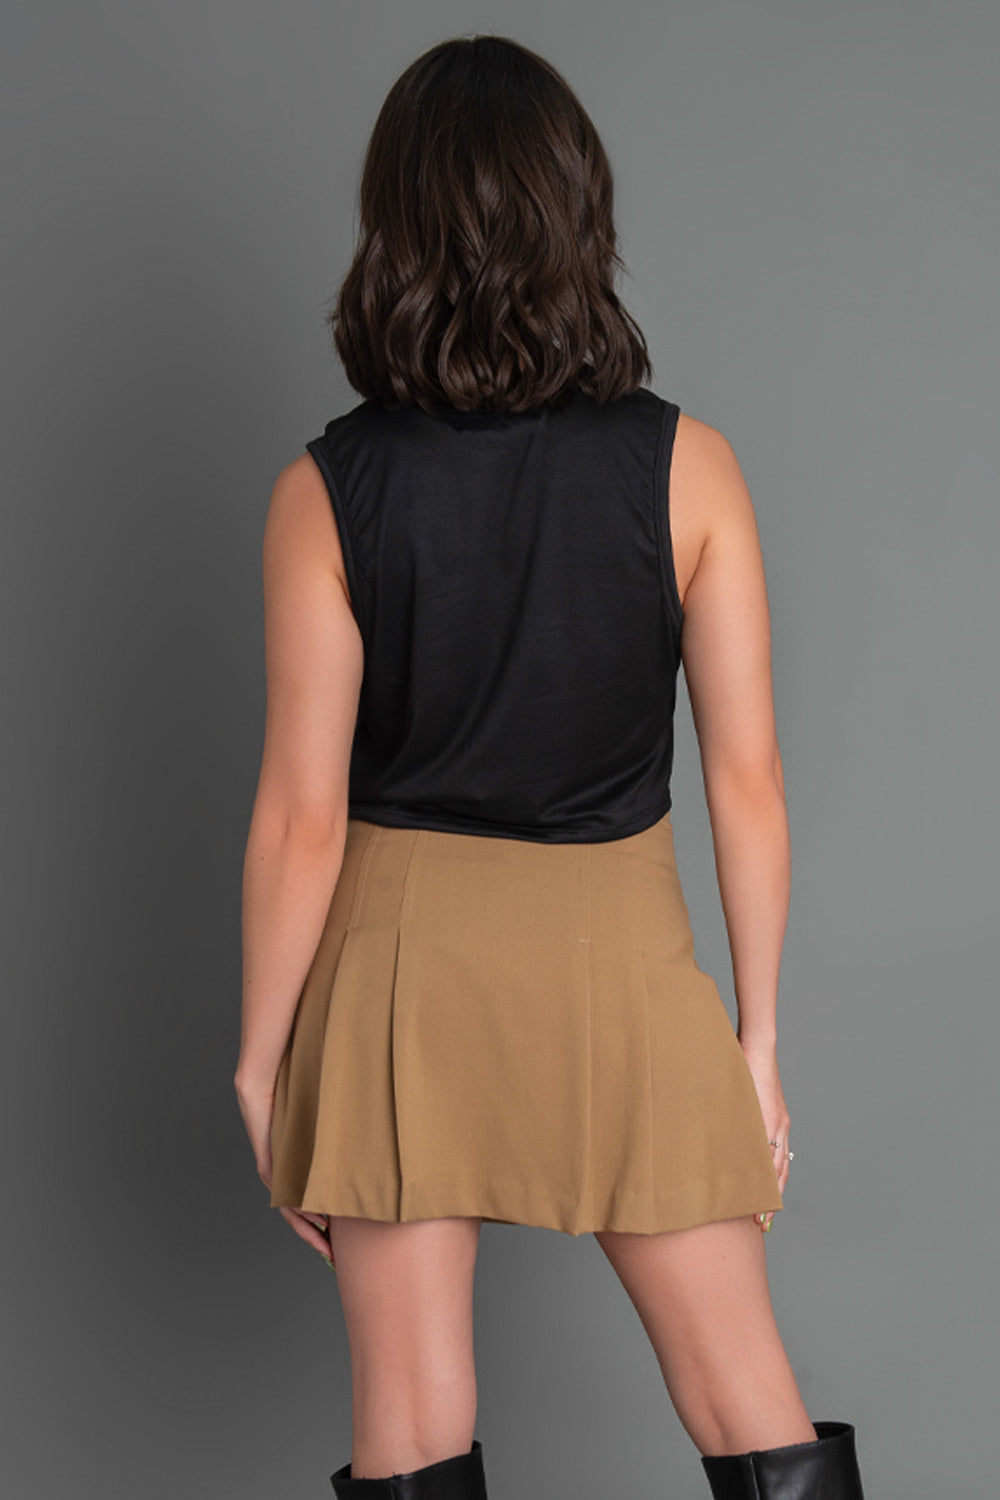 Falda short corto tableado de cintura alta, corte en a y cierre lateral con cremallera oculta.